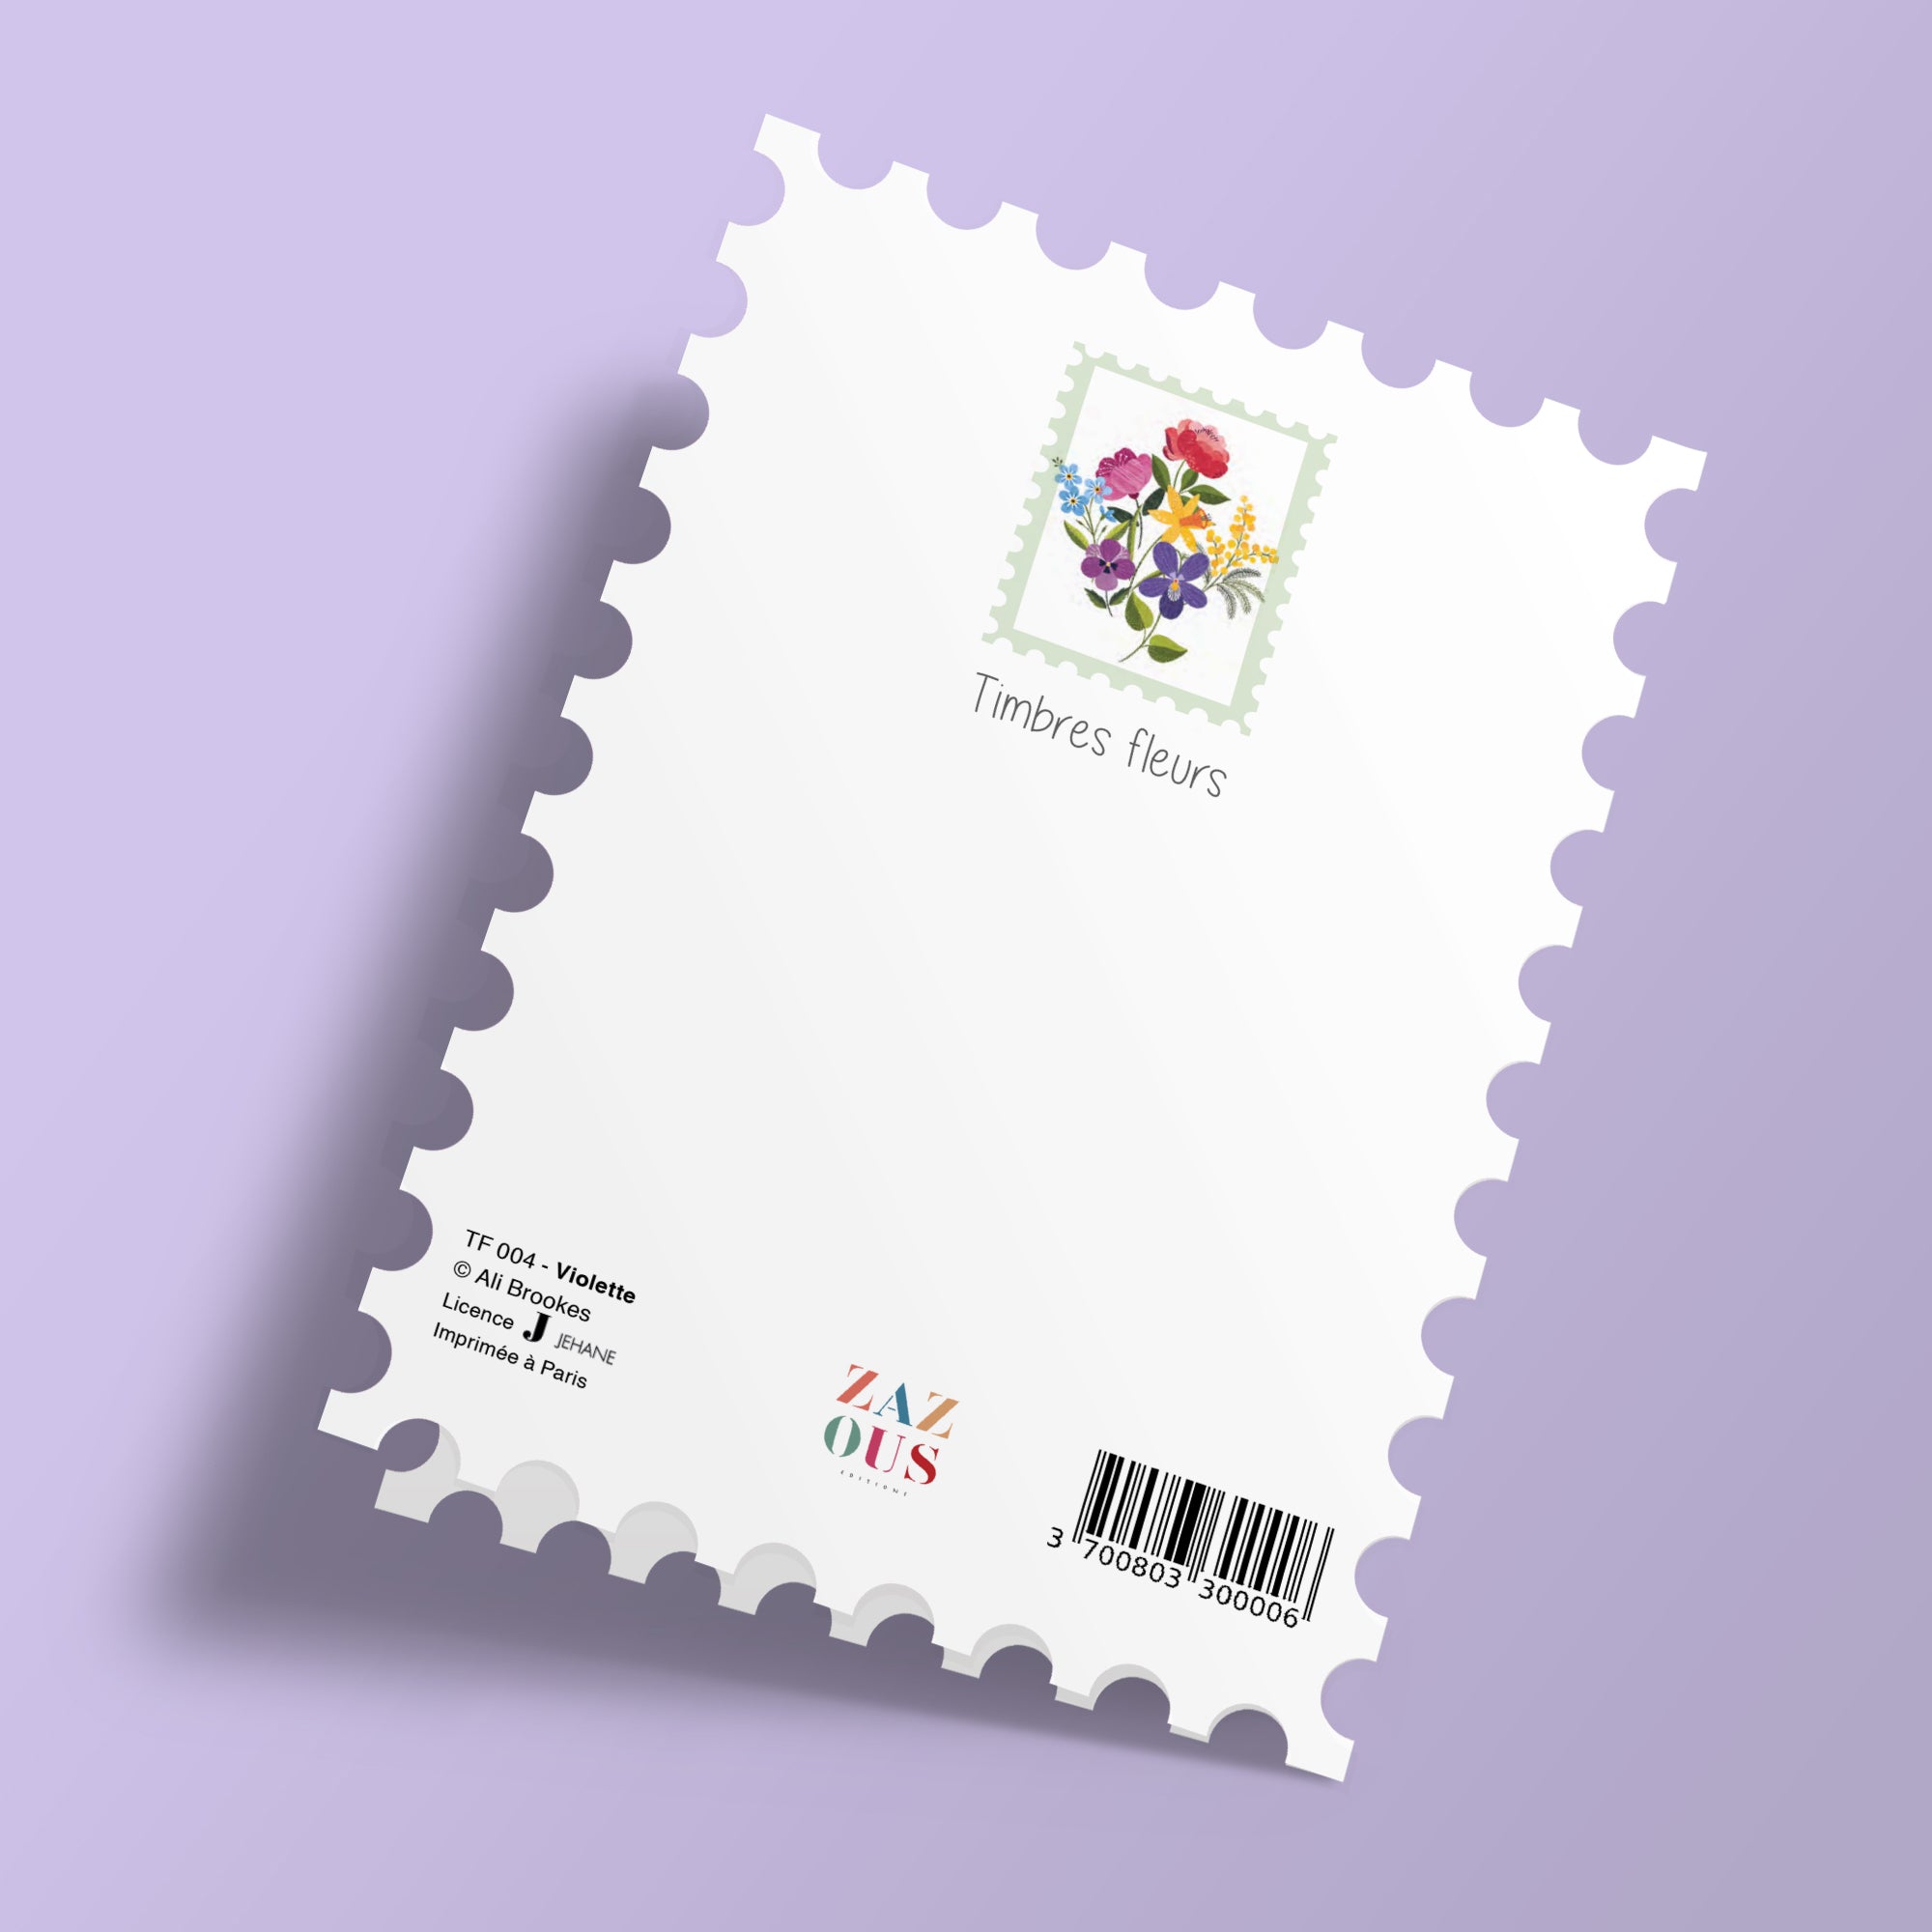 Floral Stamps - Violet